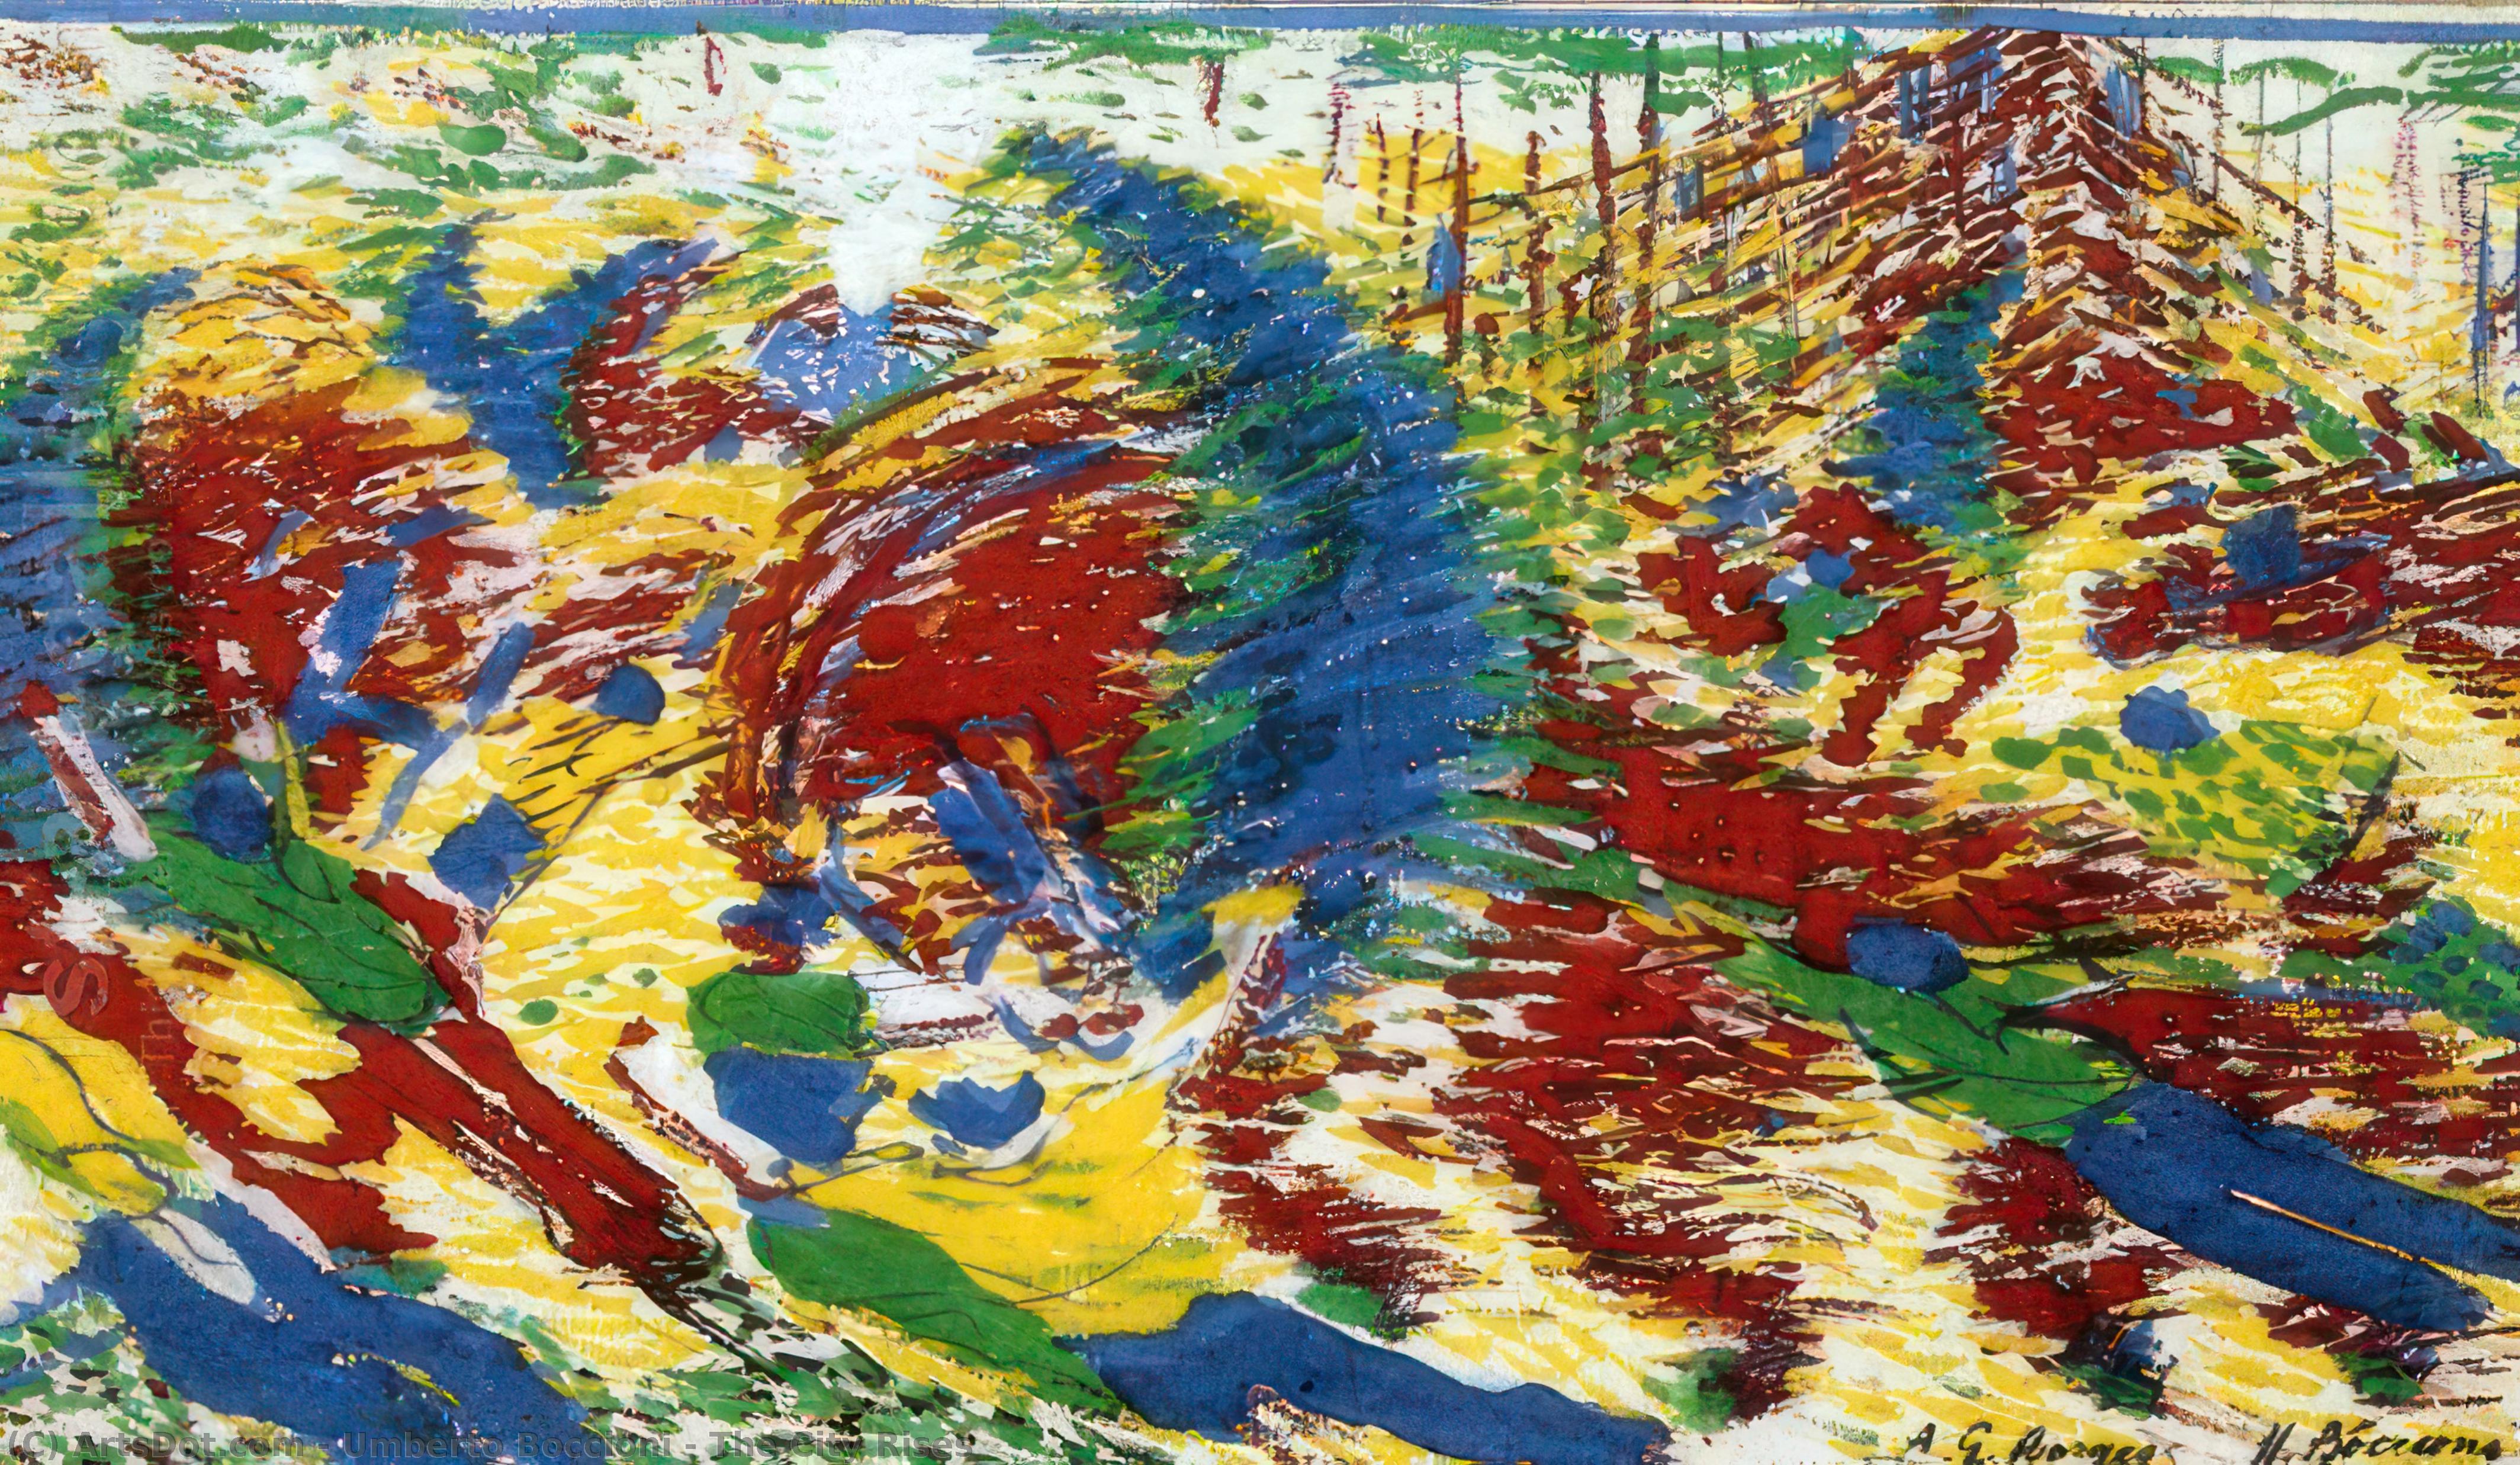 Acheter Reproductions D'art De Musée La ville se lève, 1910 de Umberto Boccioni (1882-1916, Italy) | ArtsDot.com